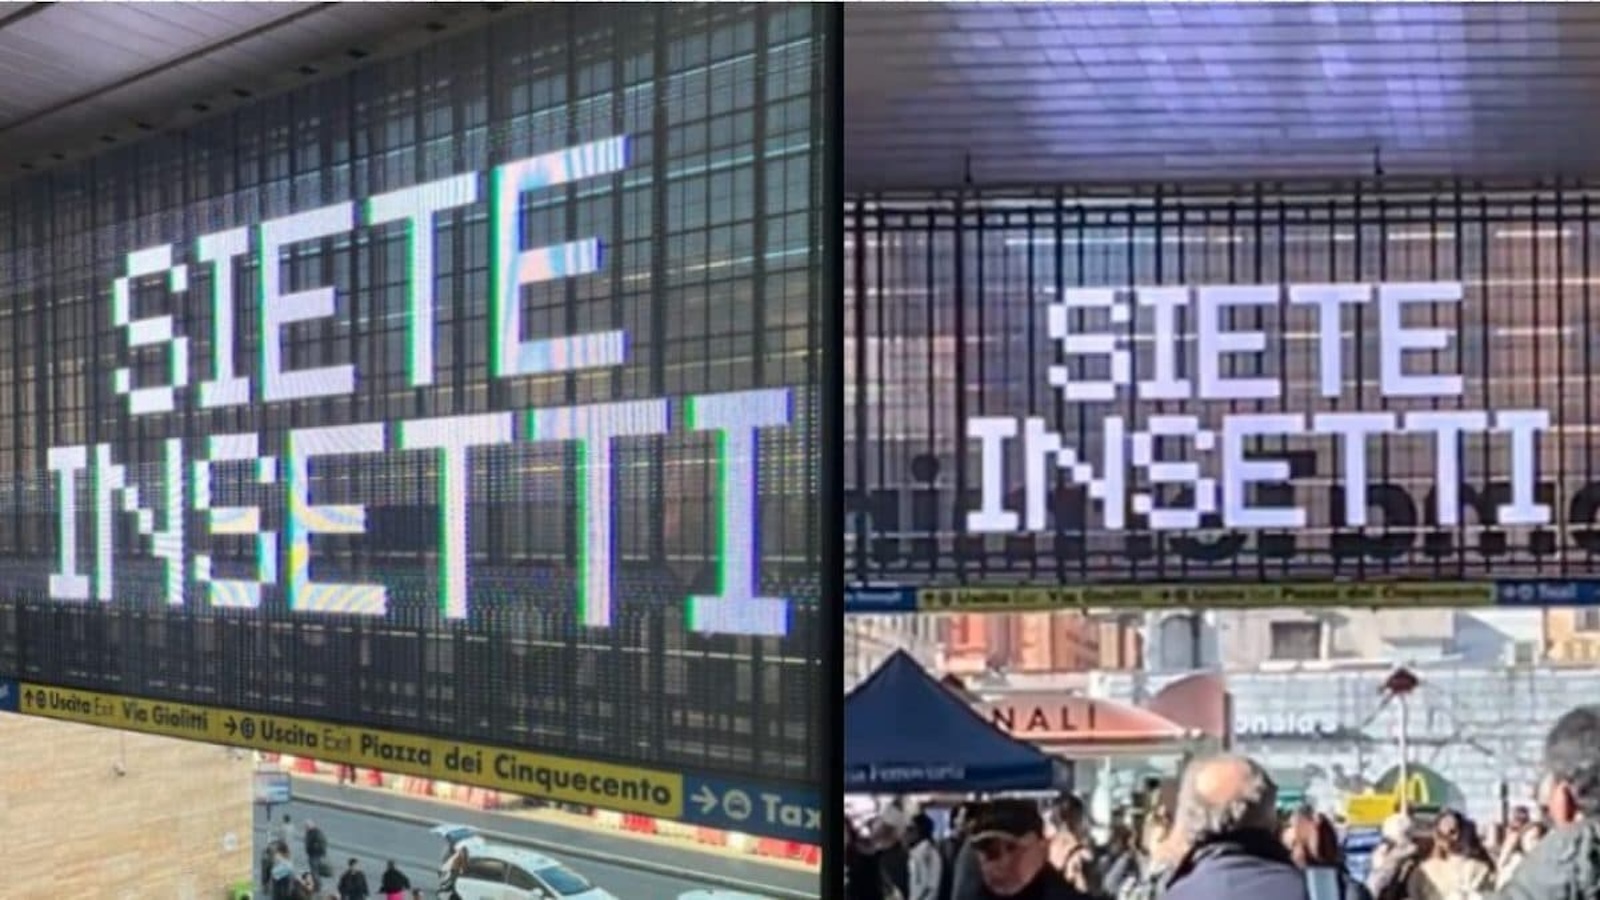 Il problema dei 3 corpi, il messaggio di guerrilla marketing nelle stazioni italiane: 'Siete insetti'